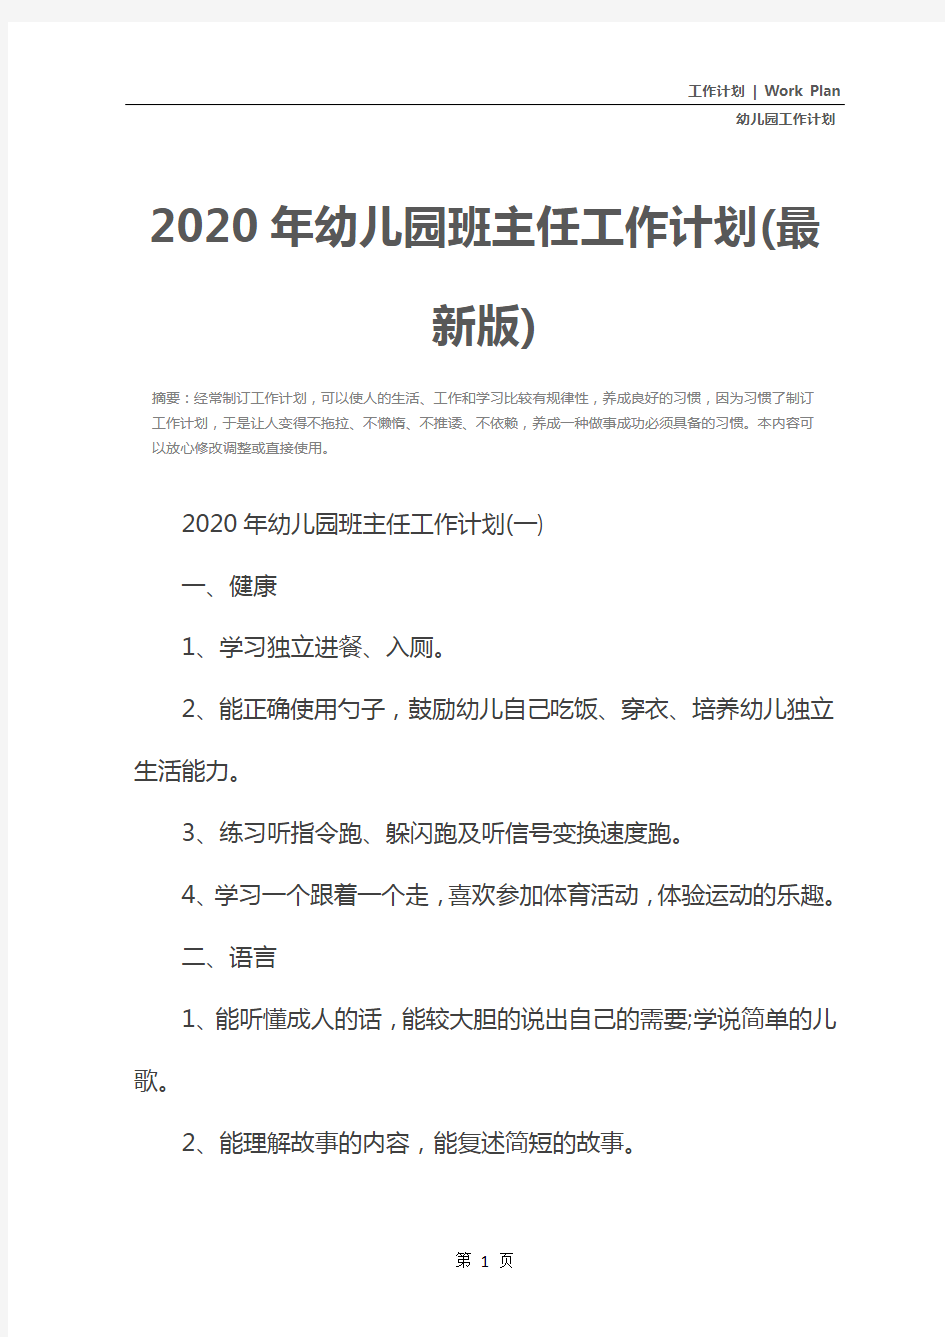 2020年幼儿园班主任工作计划(最新版)